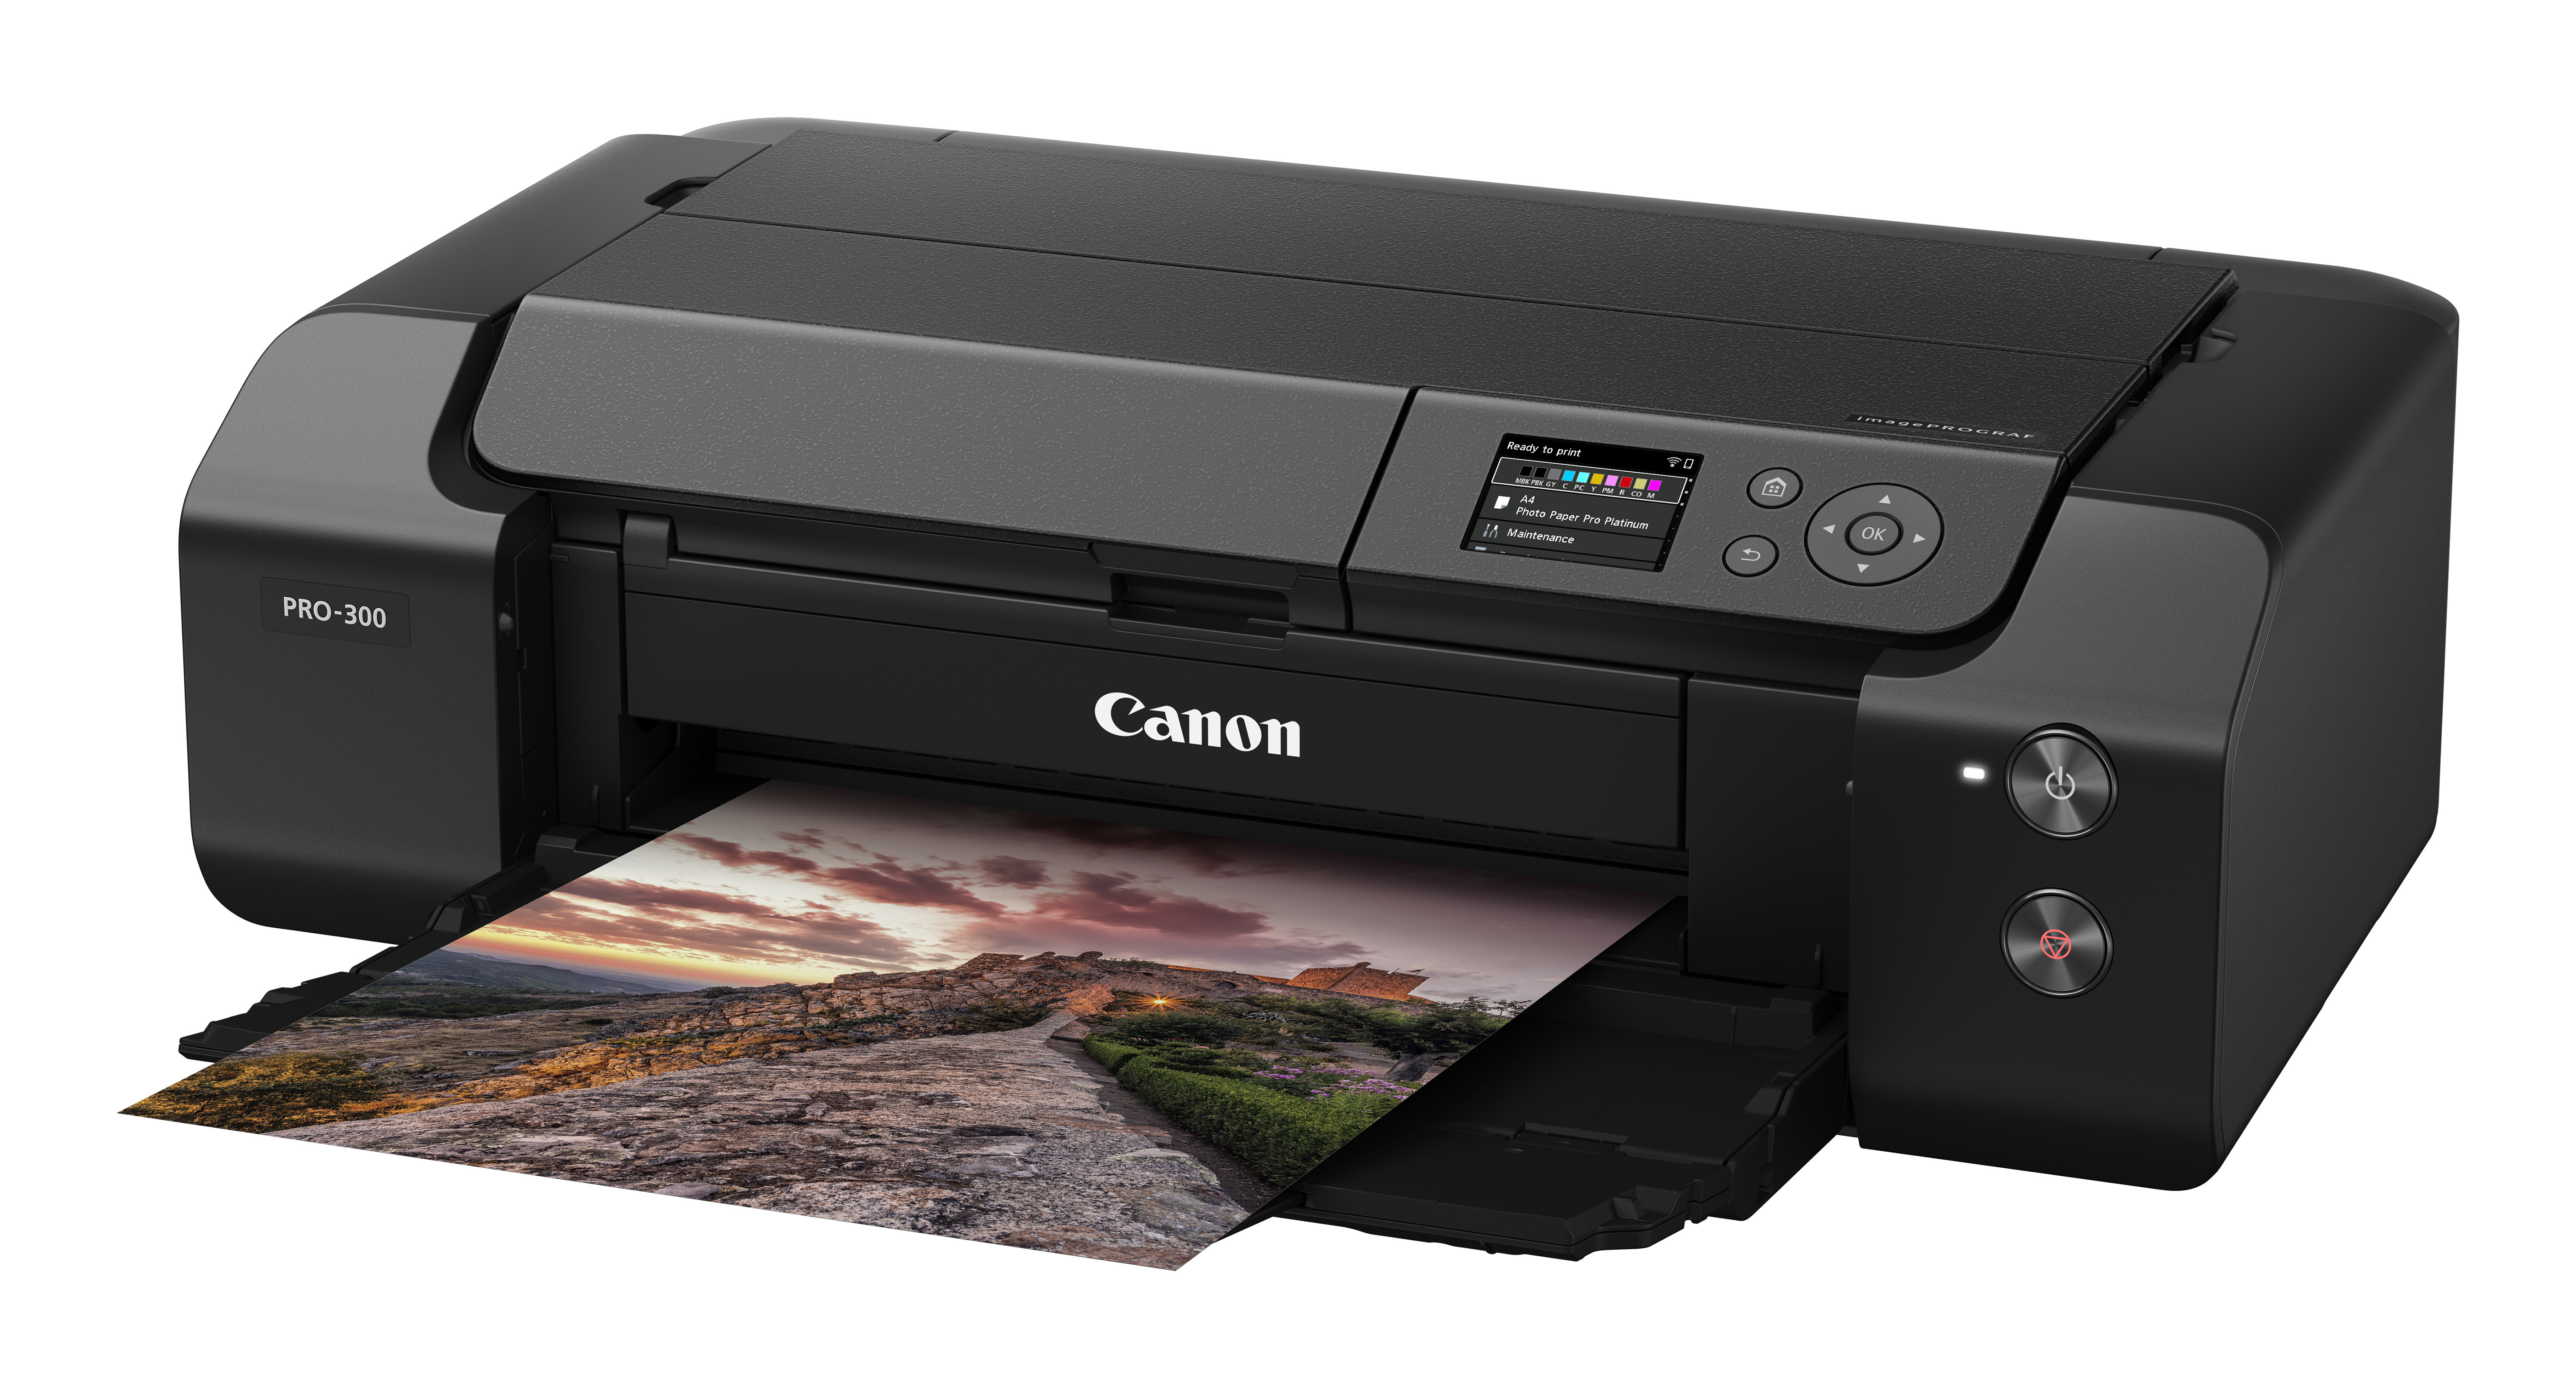 Stampante fotografica Canon imagePROGRAF PRO-300 stampante per foto 4800 x 2400 DPI 13